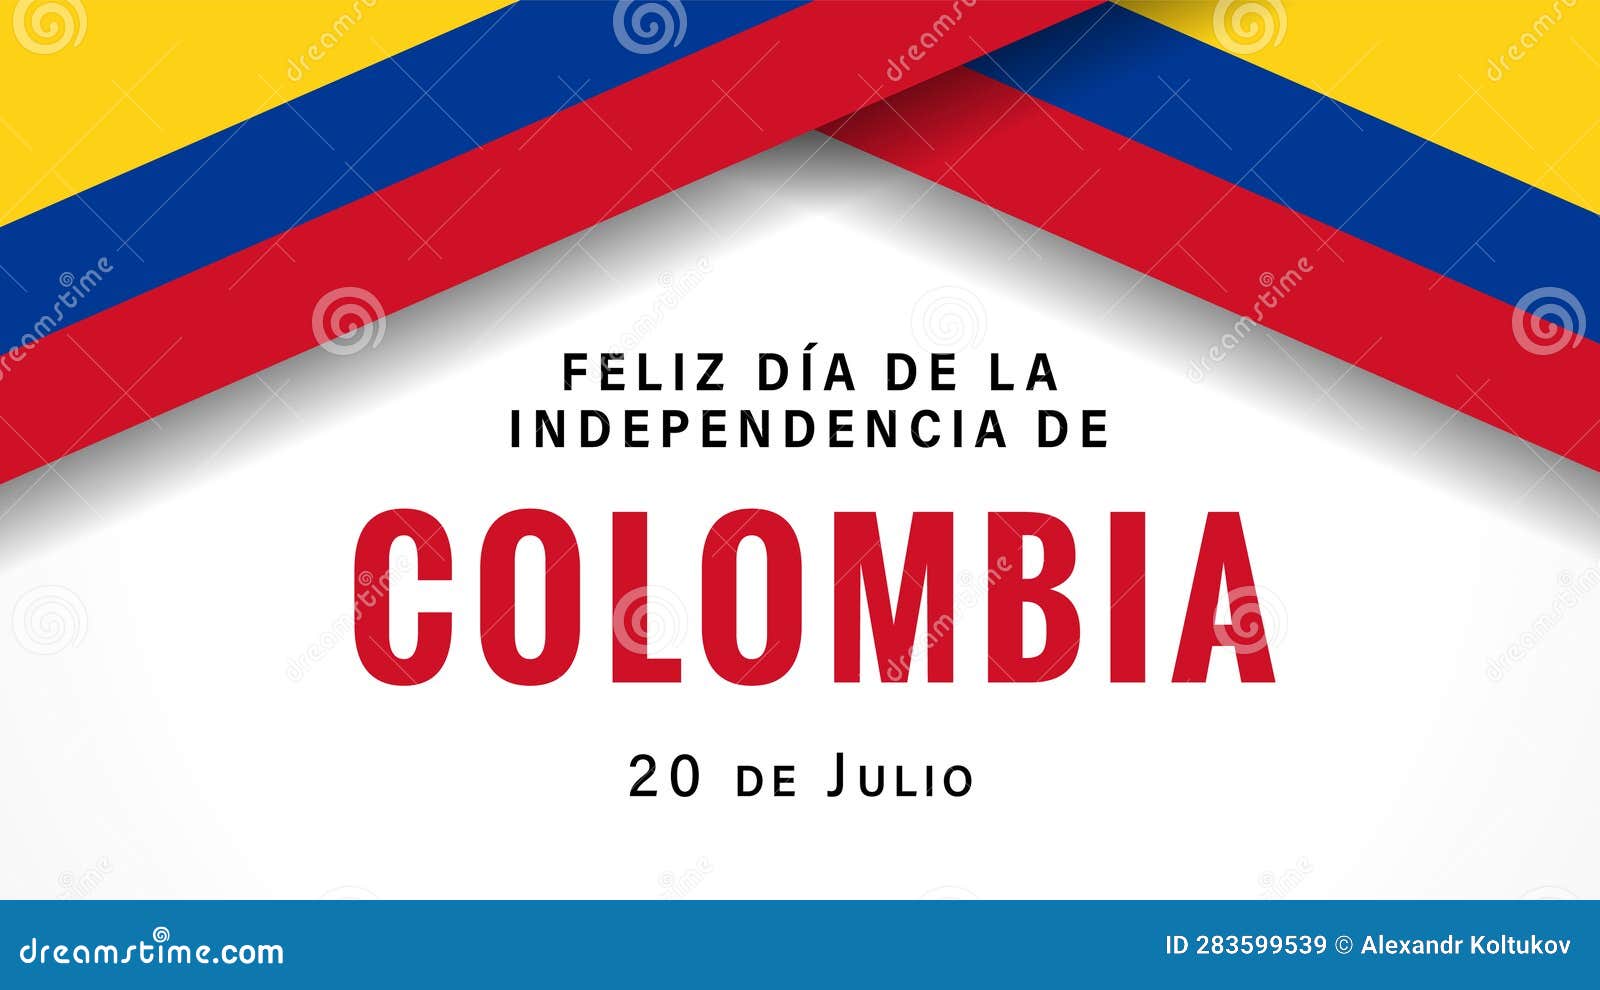 feliz dia de la independencia de colombia banner with flags